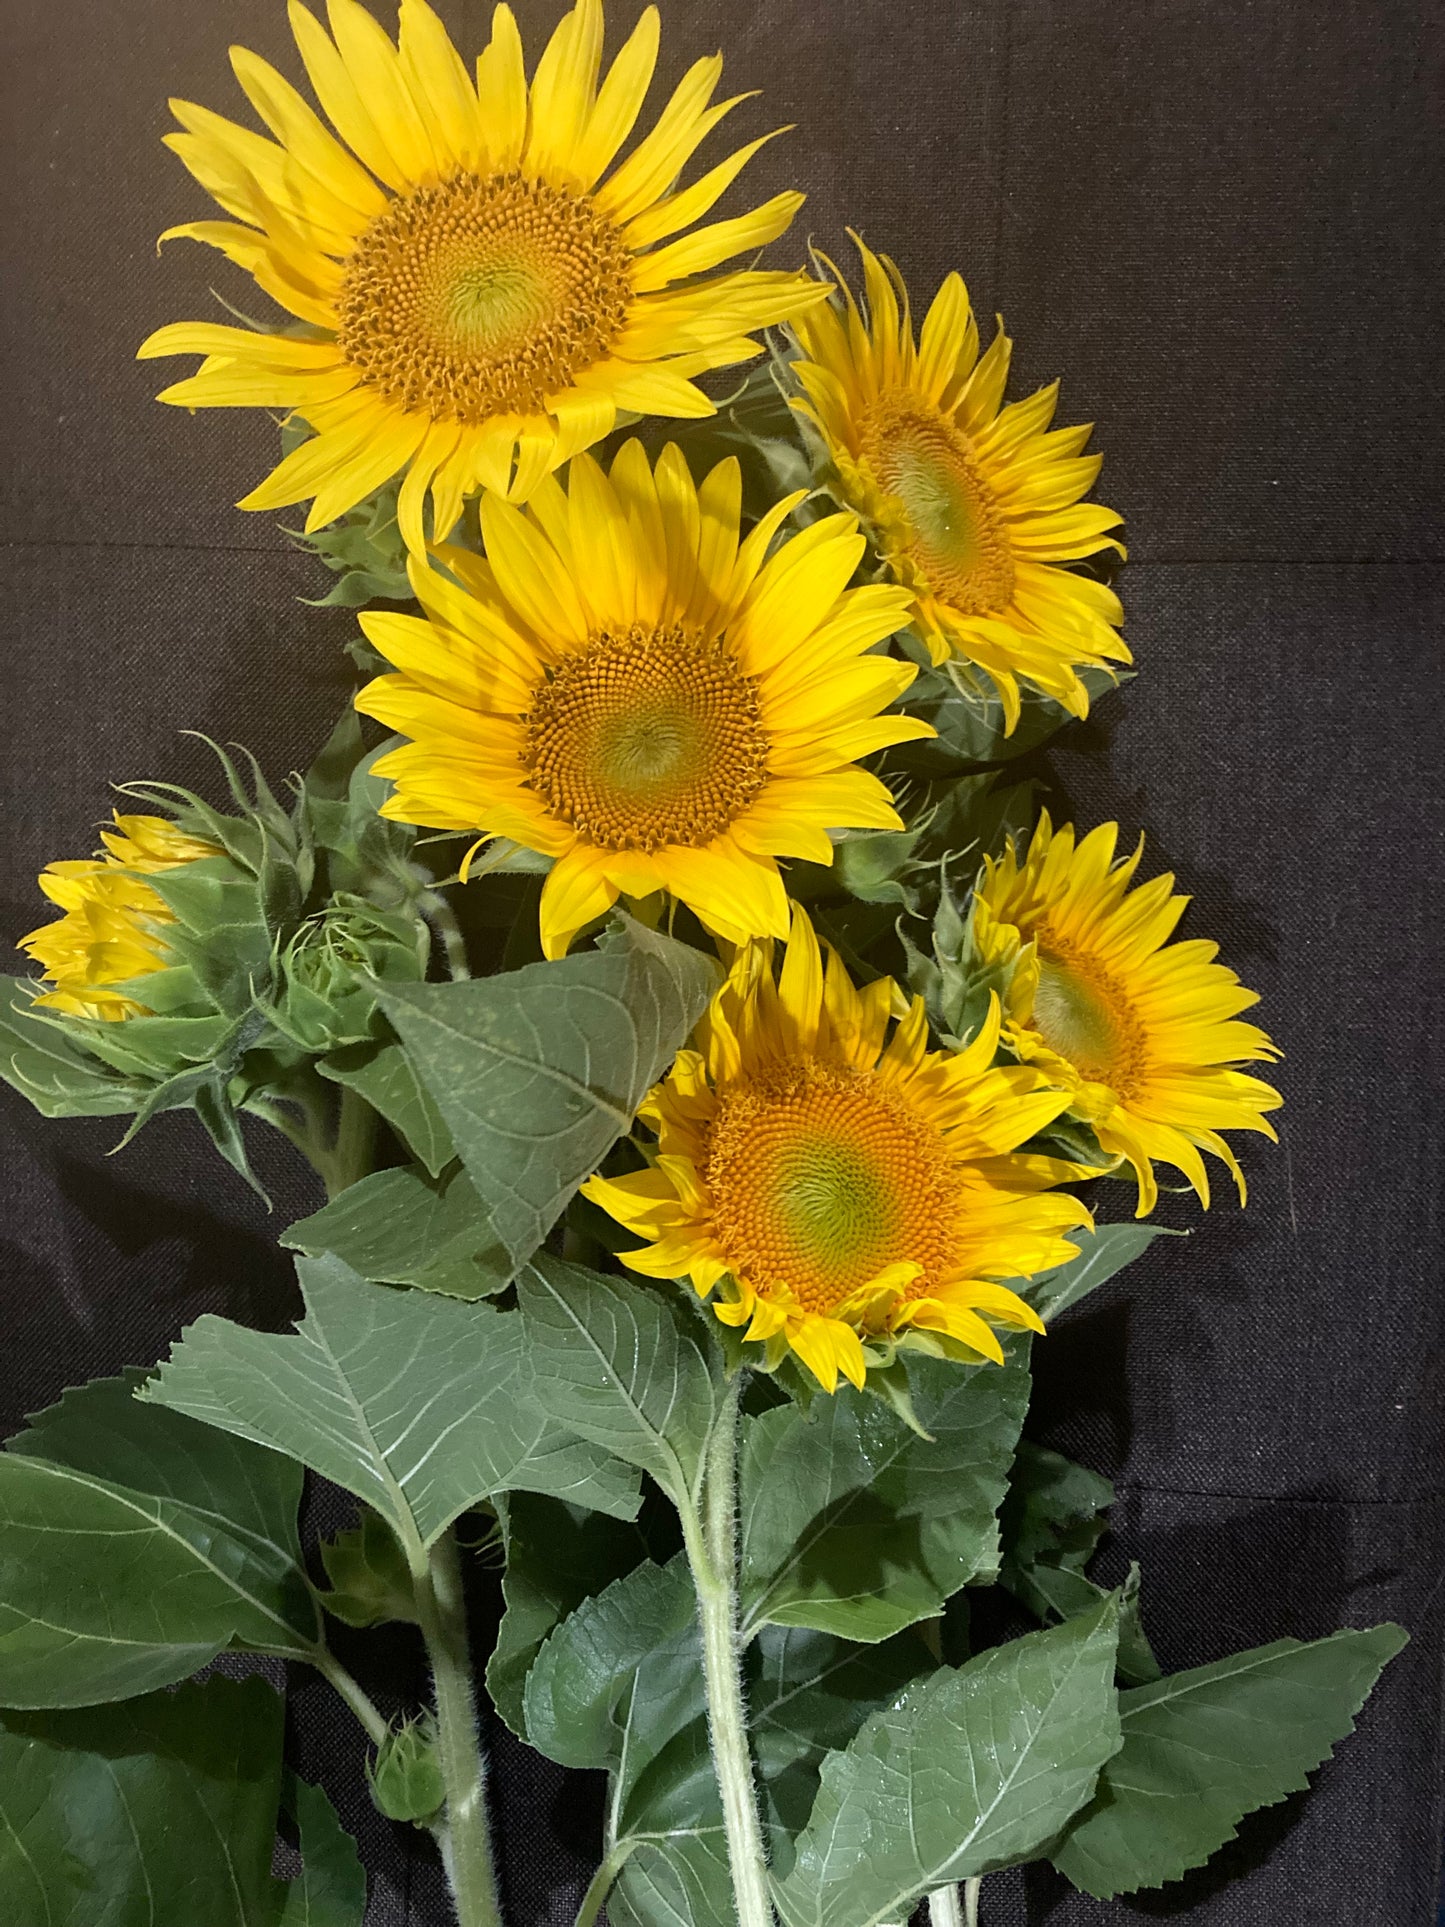 Sunflowers:  Yellow on yellow